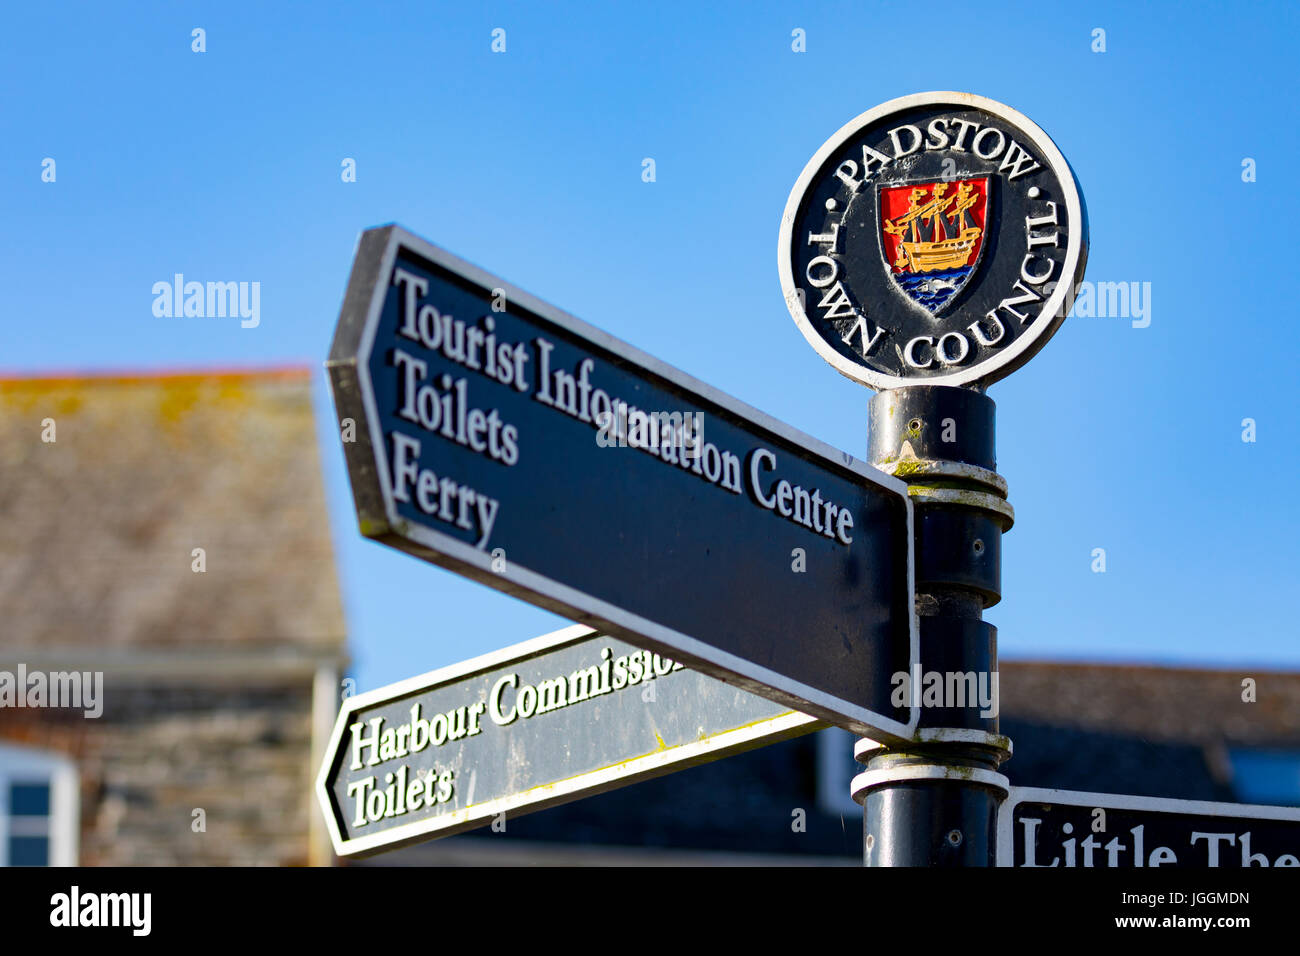 Un conseil de la ville de Padstow tourisme fonte informations inscription avec le crest pointant dans des directions différentes, contre un ciel d'été bleu clair, Padstow, Angleterre Banque D'Images